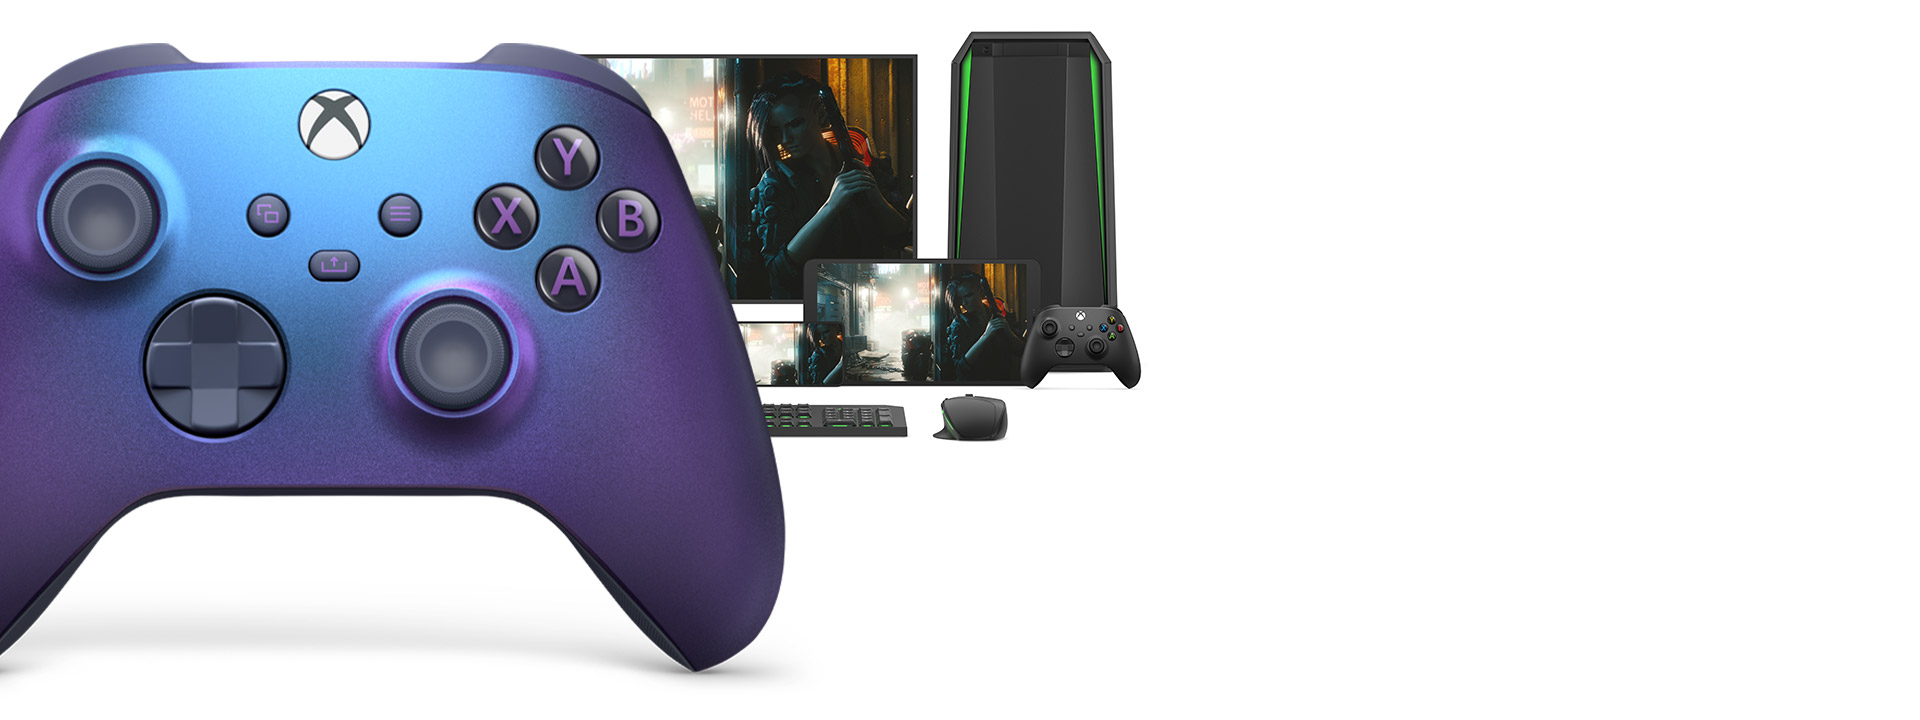 Vooraanzicht van de rechterkant van de Xbox draadloze controller – Stellar Shift Special Edition met verschillende gameplatforms erachter